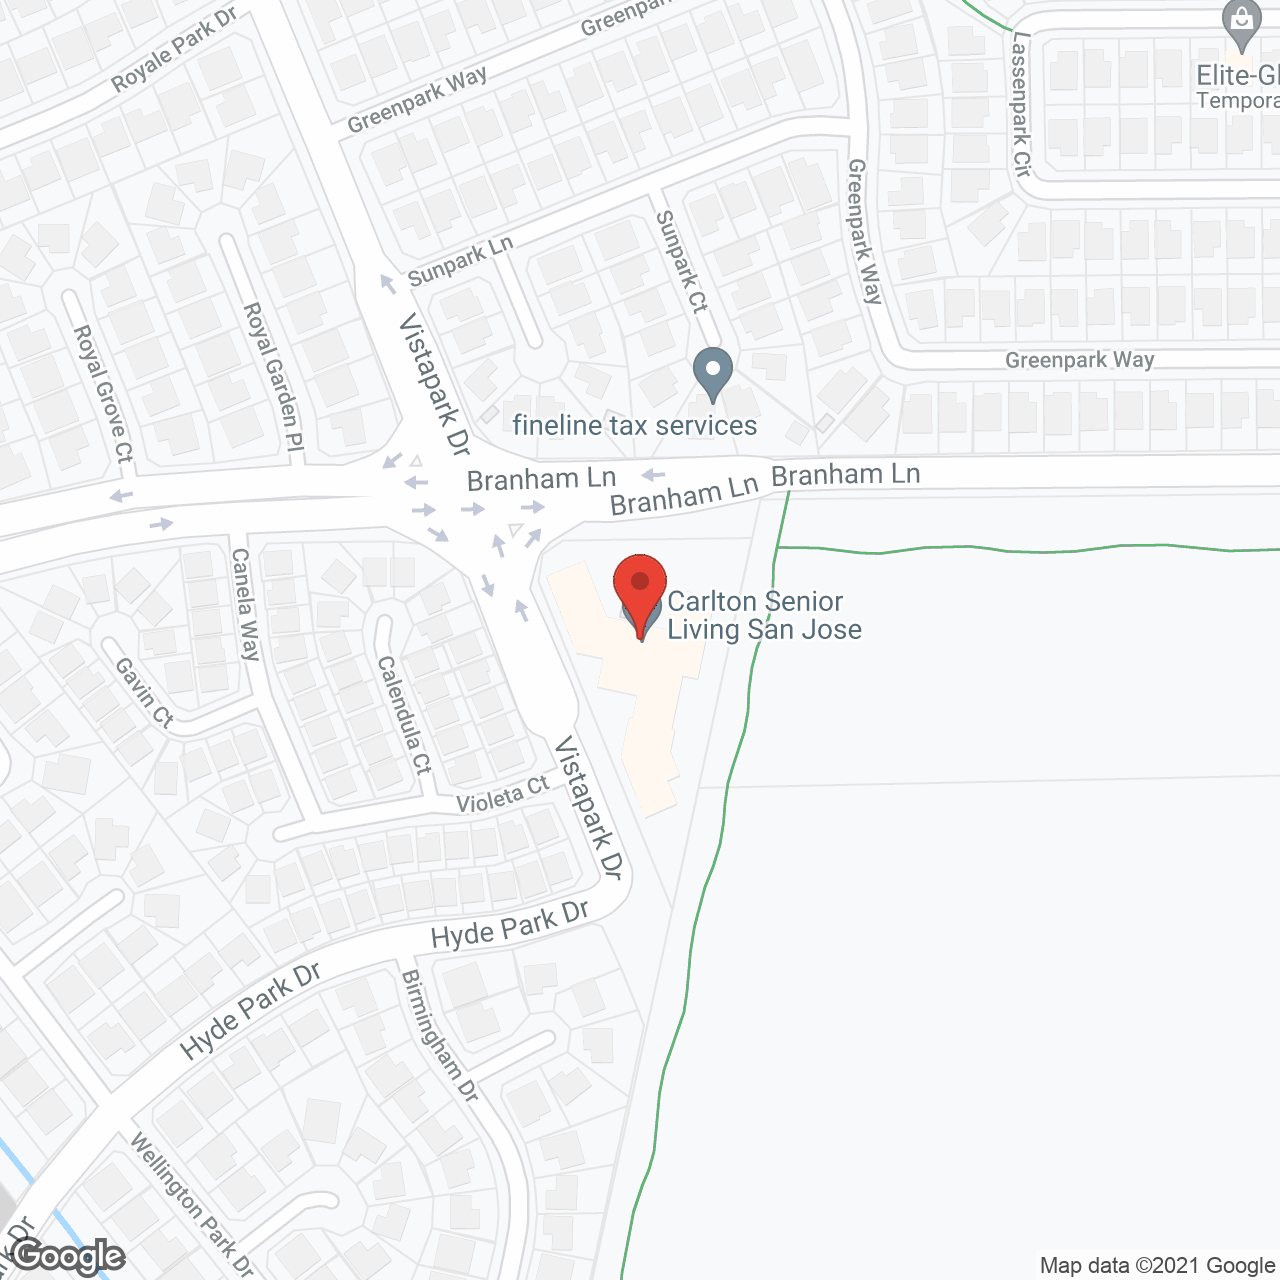 Carlton Senior Living San Jose in google map